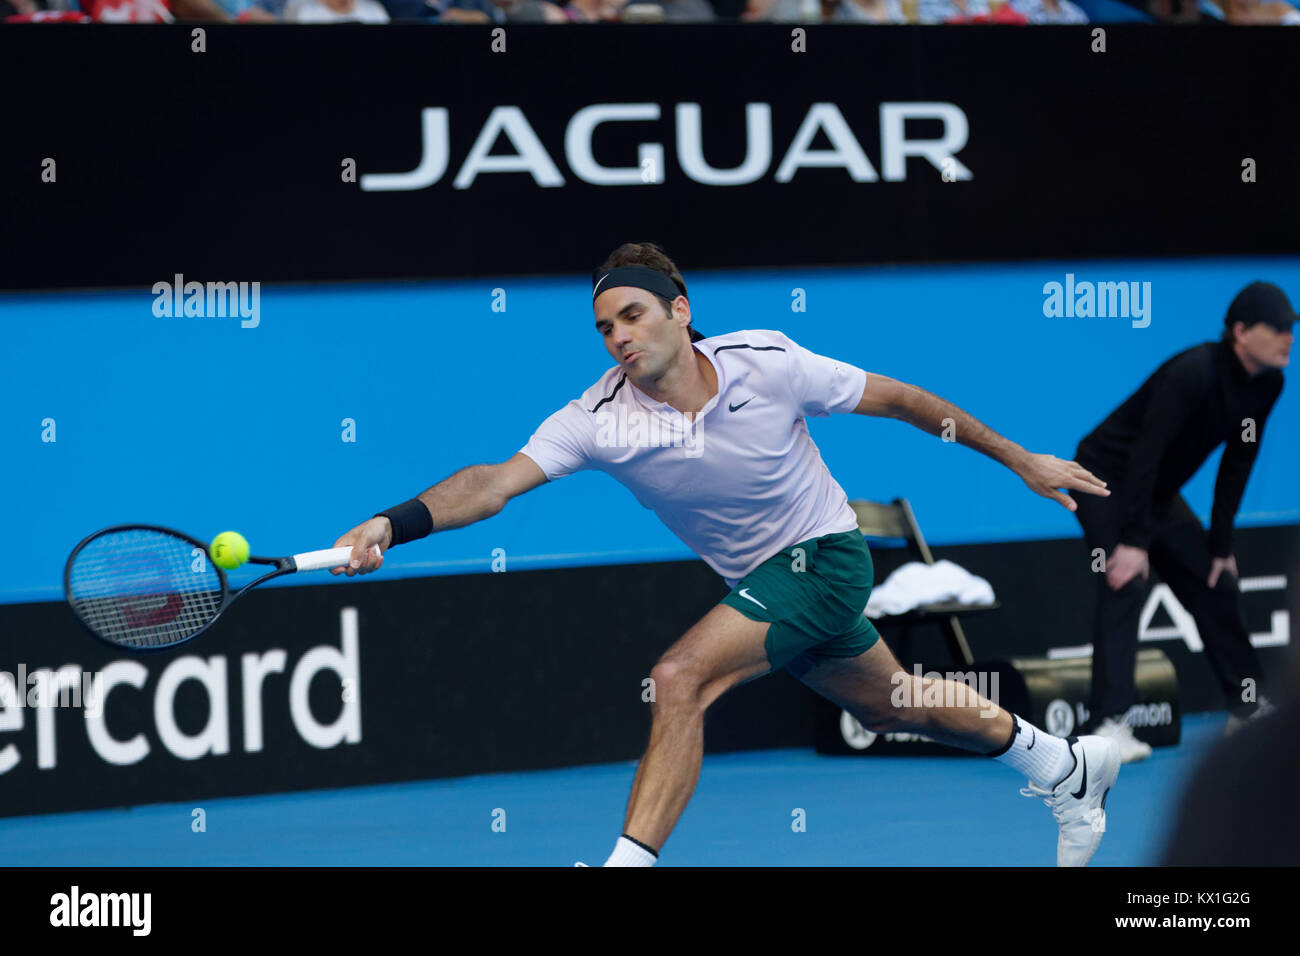 Perth, Australia. El 6 de enero, 2017. Roger Federer de Suiza se prepara para servir el balón a oponente Alexander Zverev de Alemania en la final de la Copa Hopman en Perth, Australia, Januray 6, 2018. Crédito: Trevor Collens/Alamy Live News Foto de stock